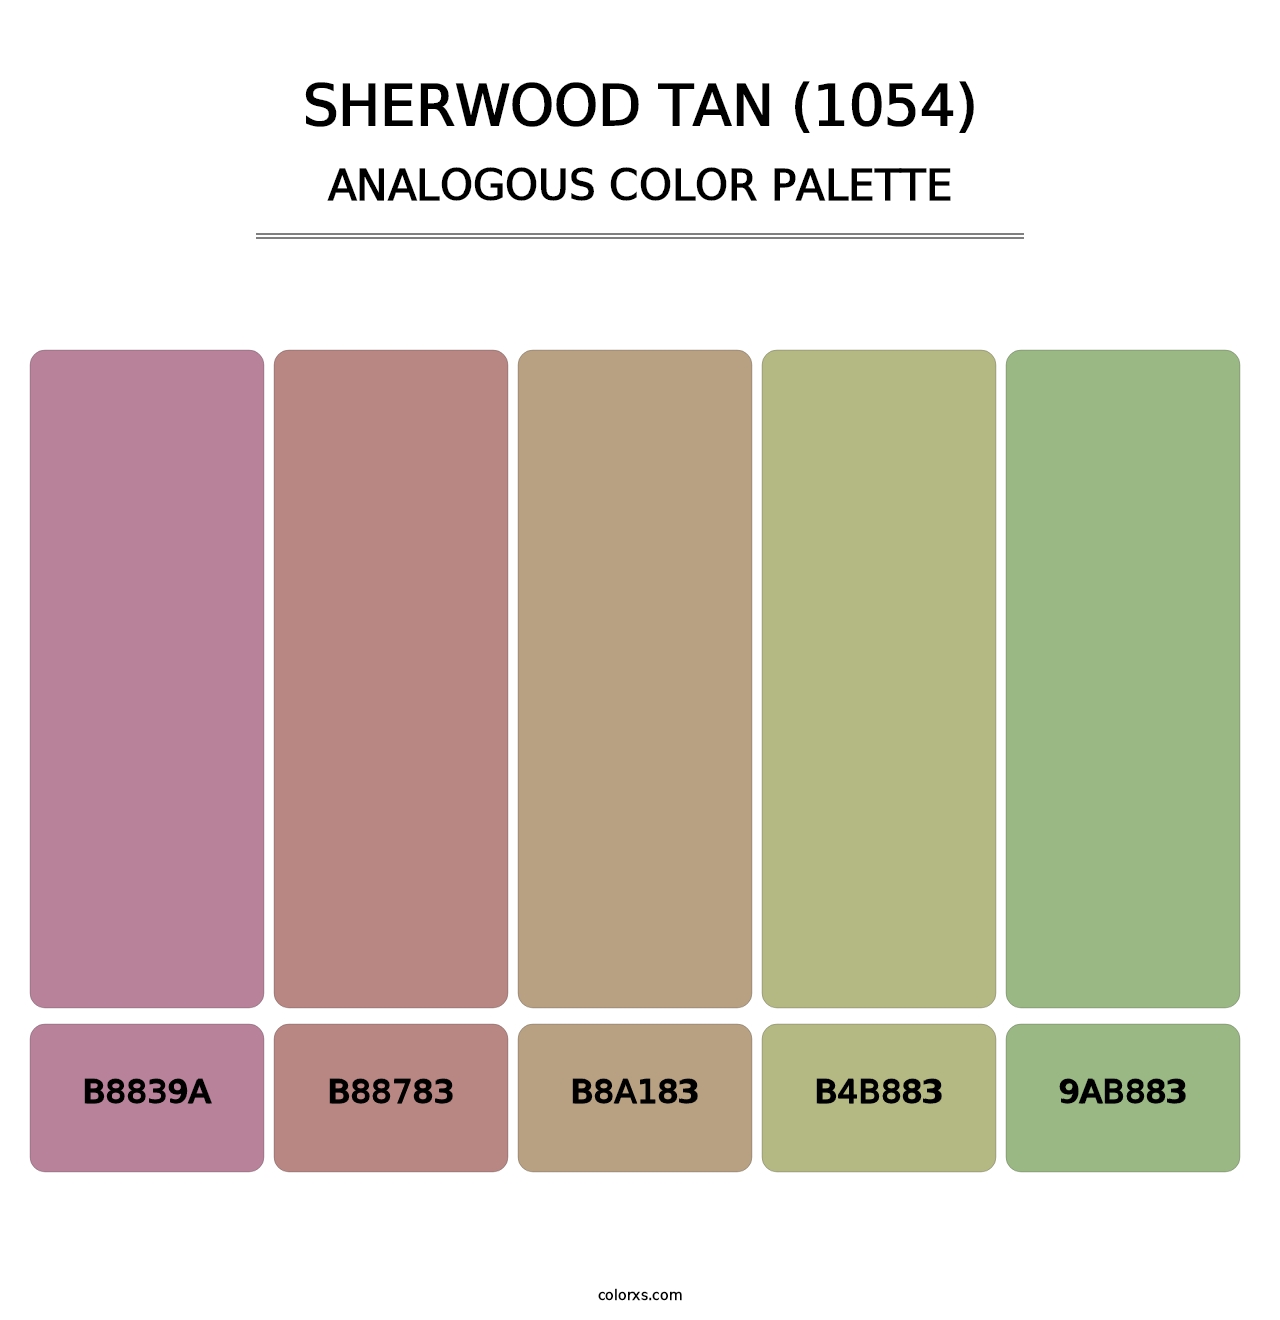 Sherwood Tan (1054) - Analogous Color Palette